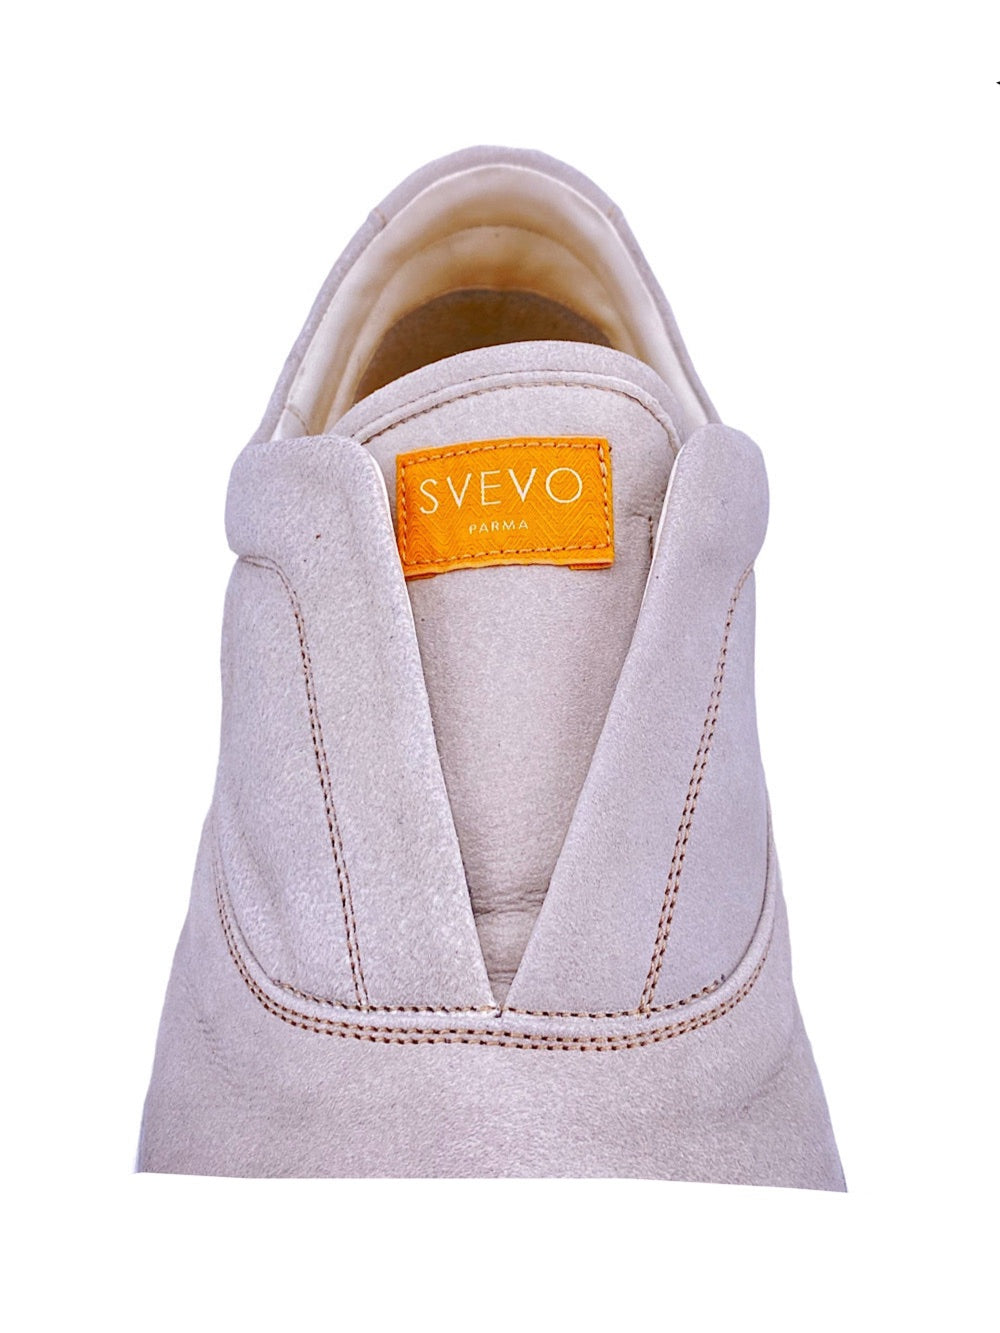 Svevo white suede slip on sneaker